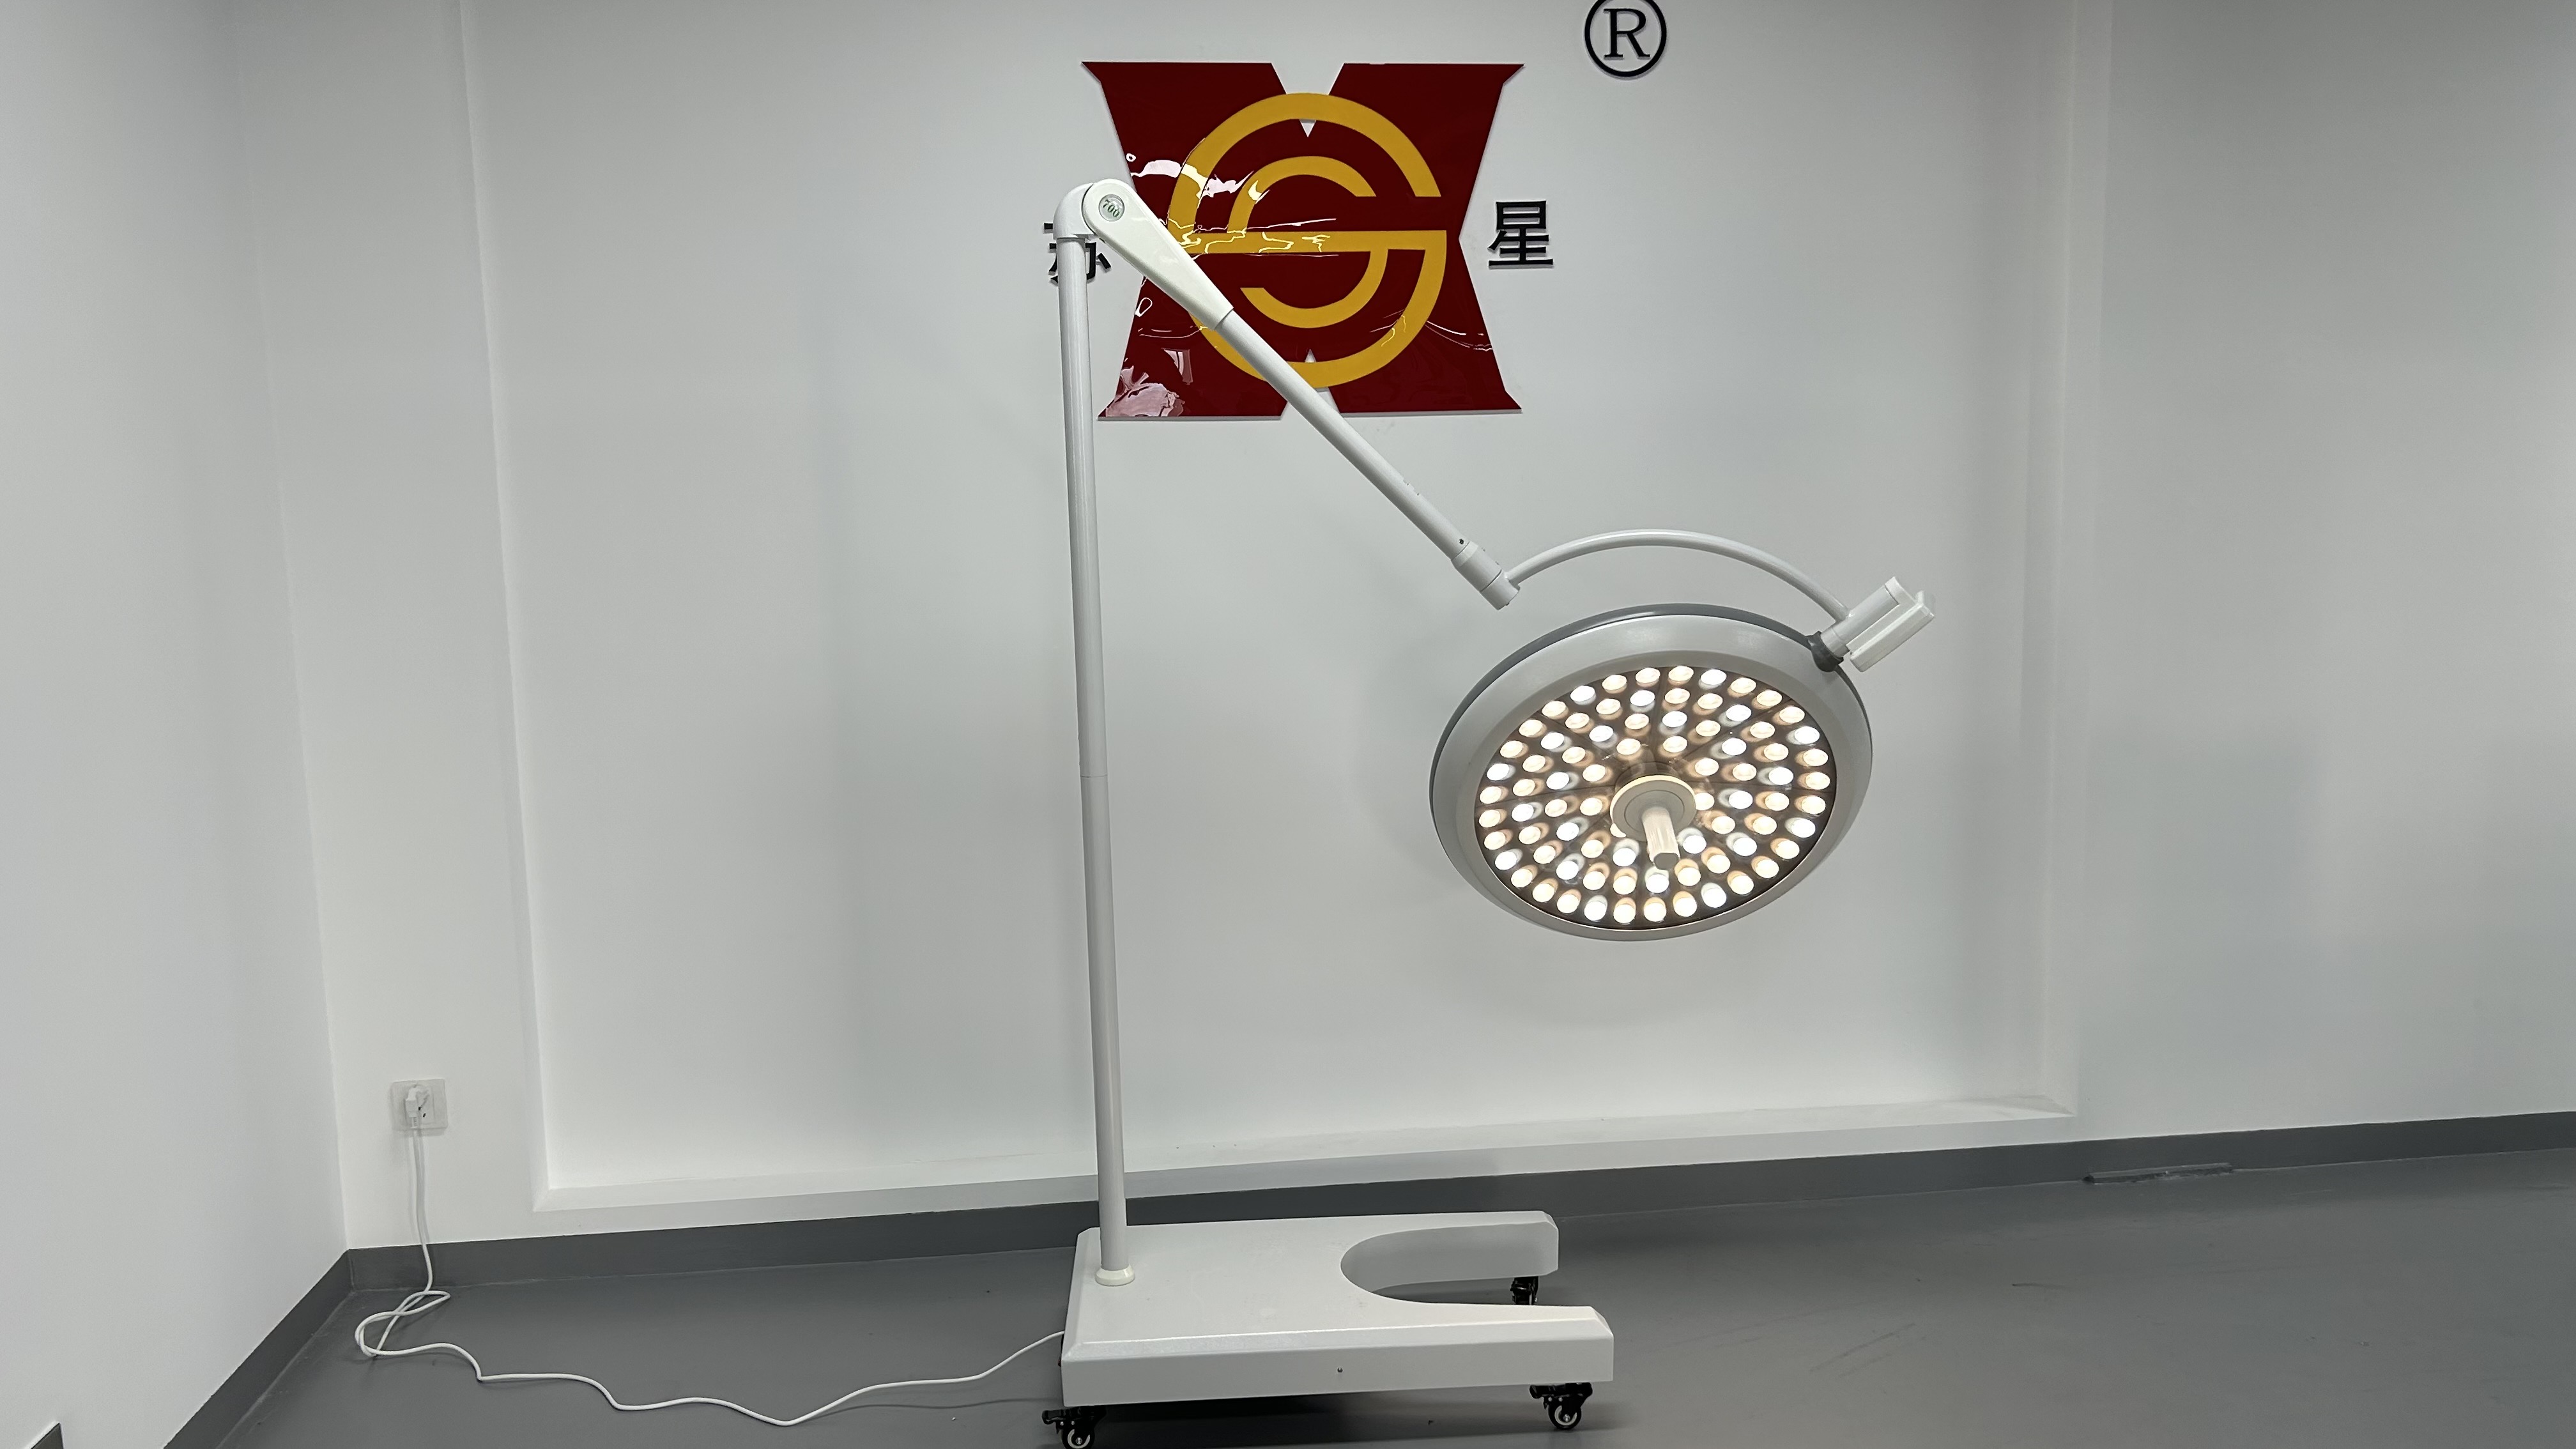 Lampu Medis LED Ekonomi Lampu Operasi Bedah Berdiri Lantai Seluler Portabel